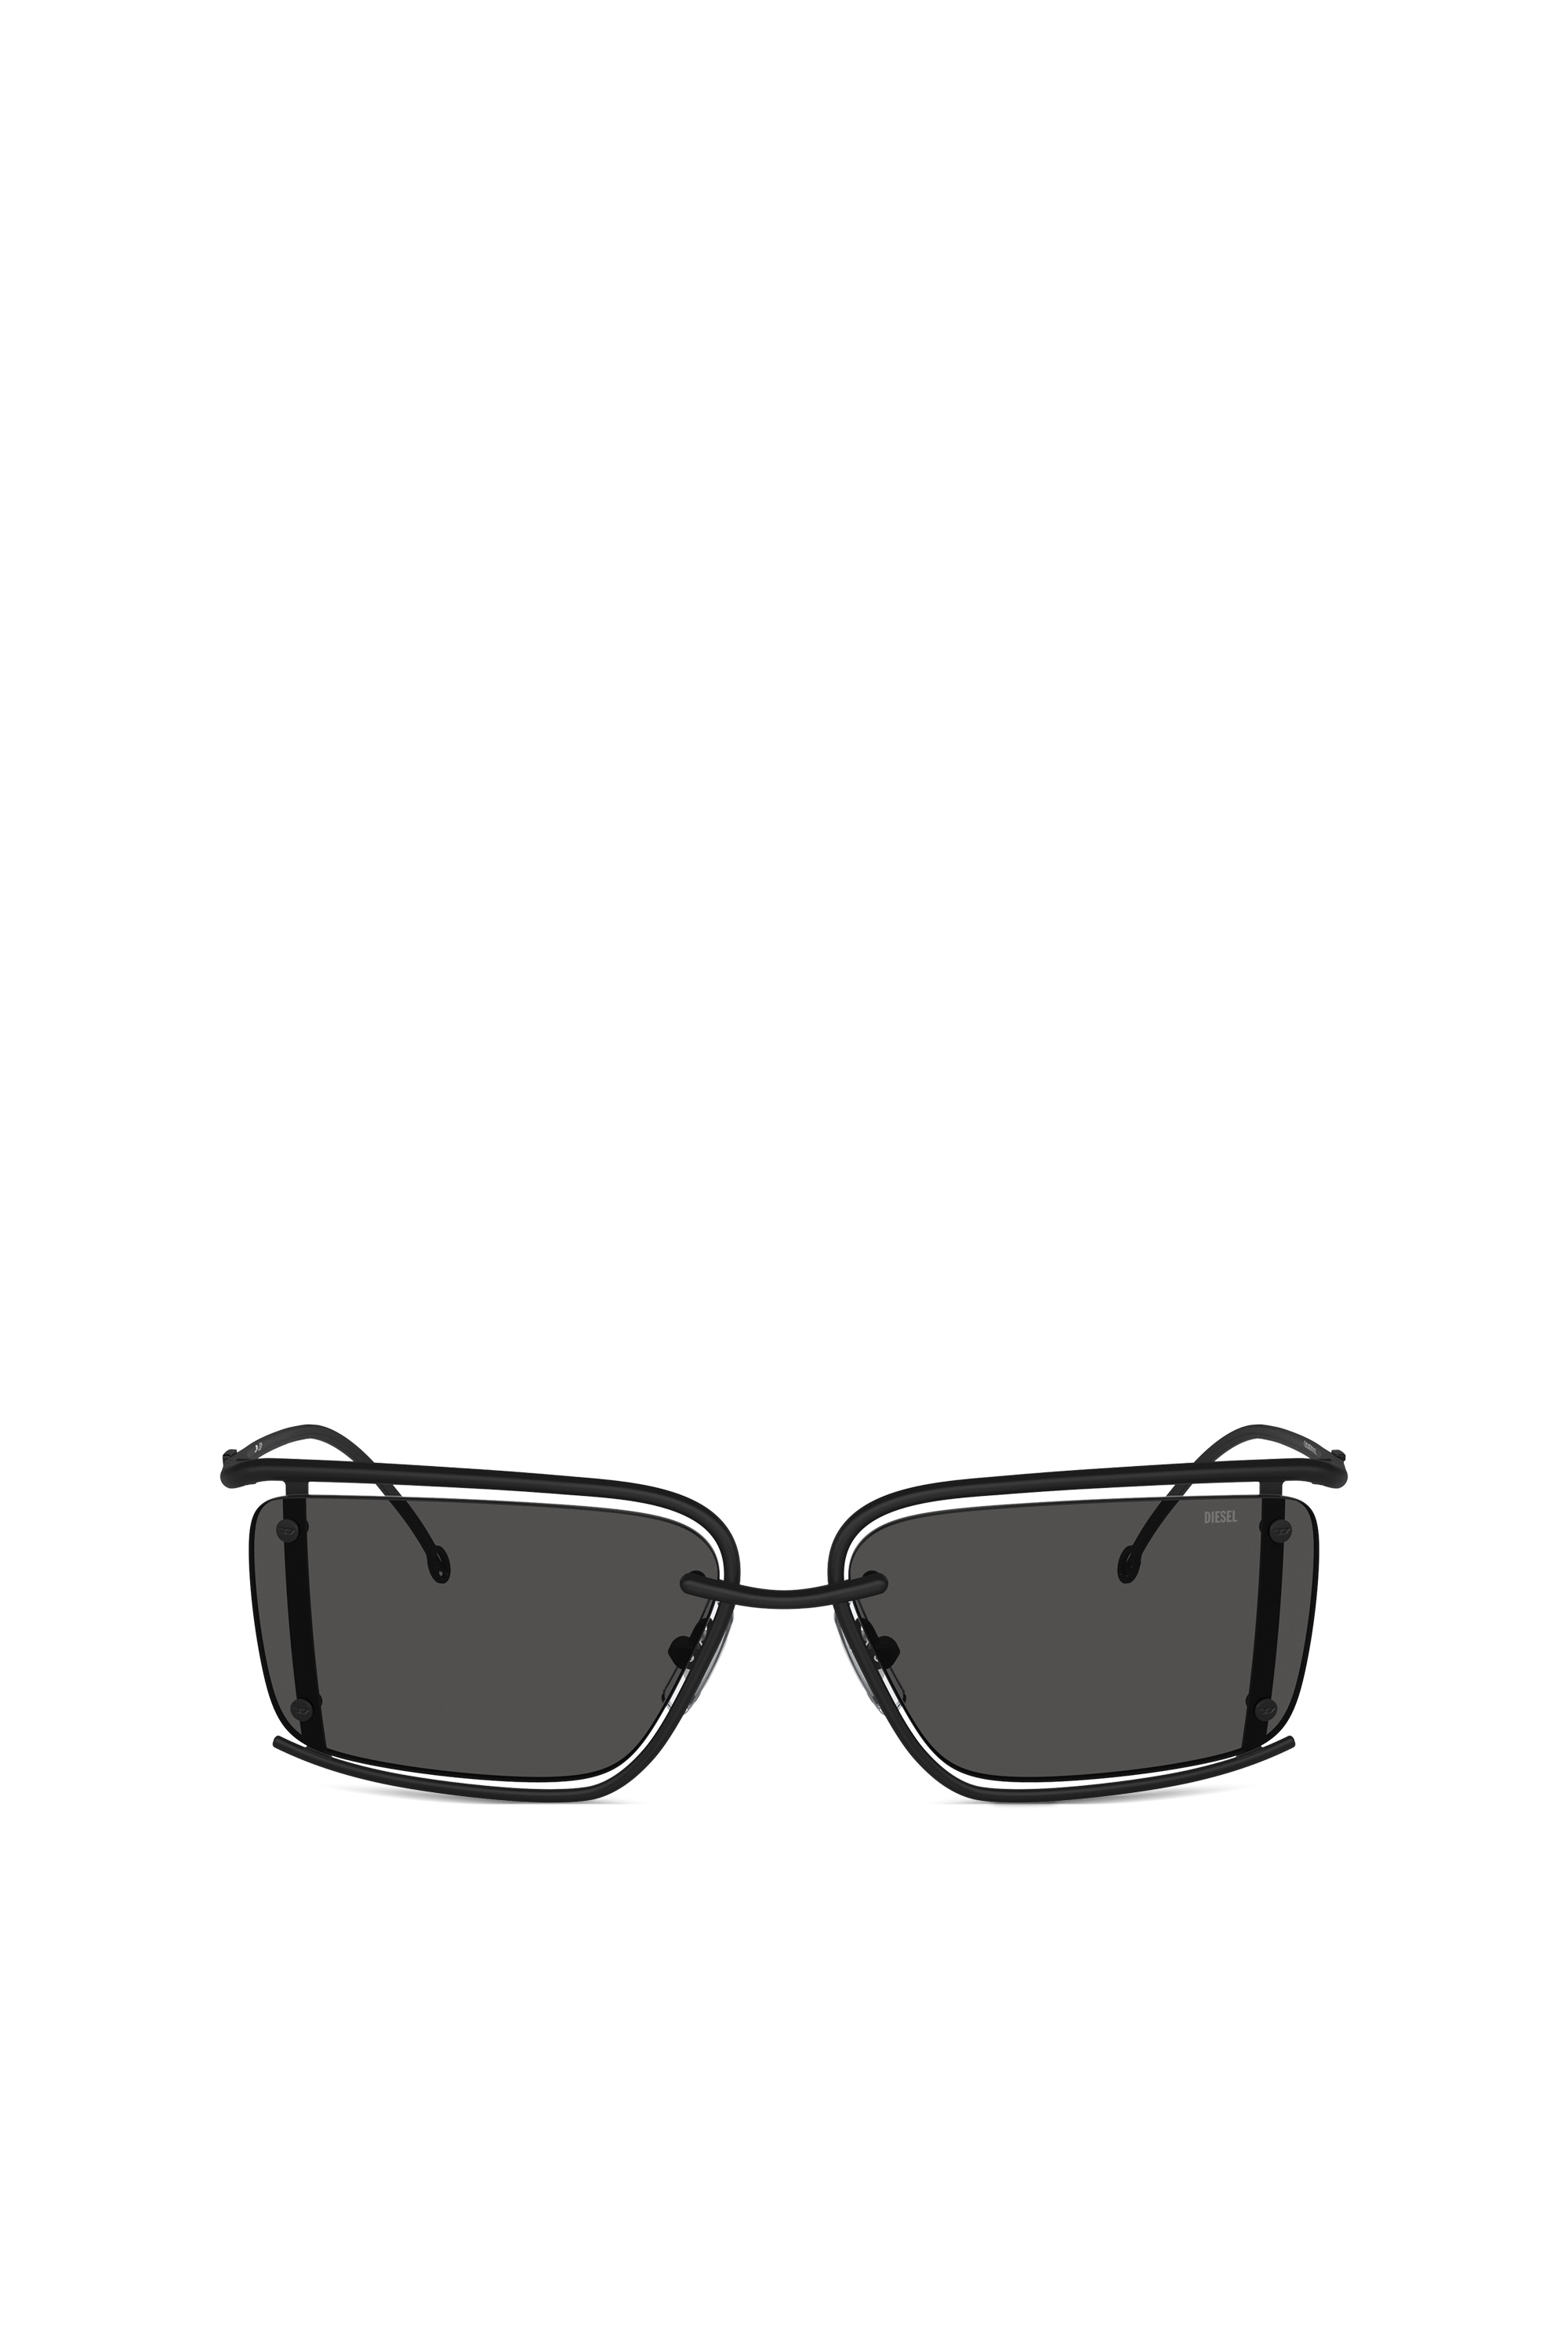 Diesel - Gafas rectangulares - Gafas de sol - Unisex - Negro